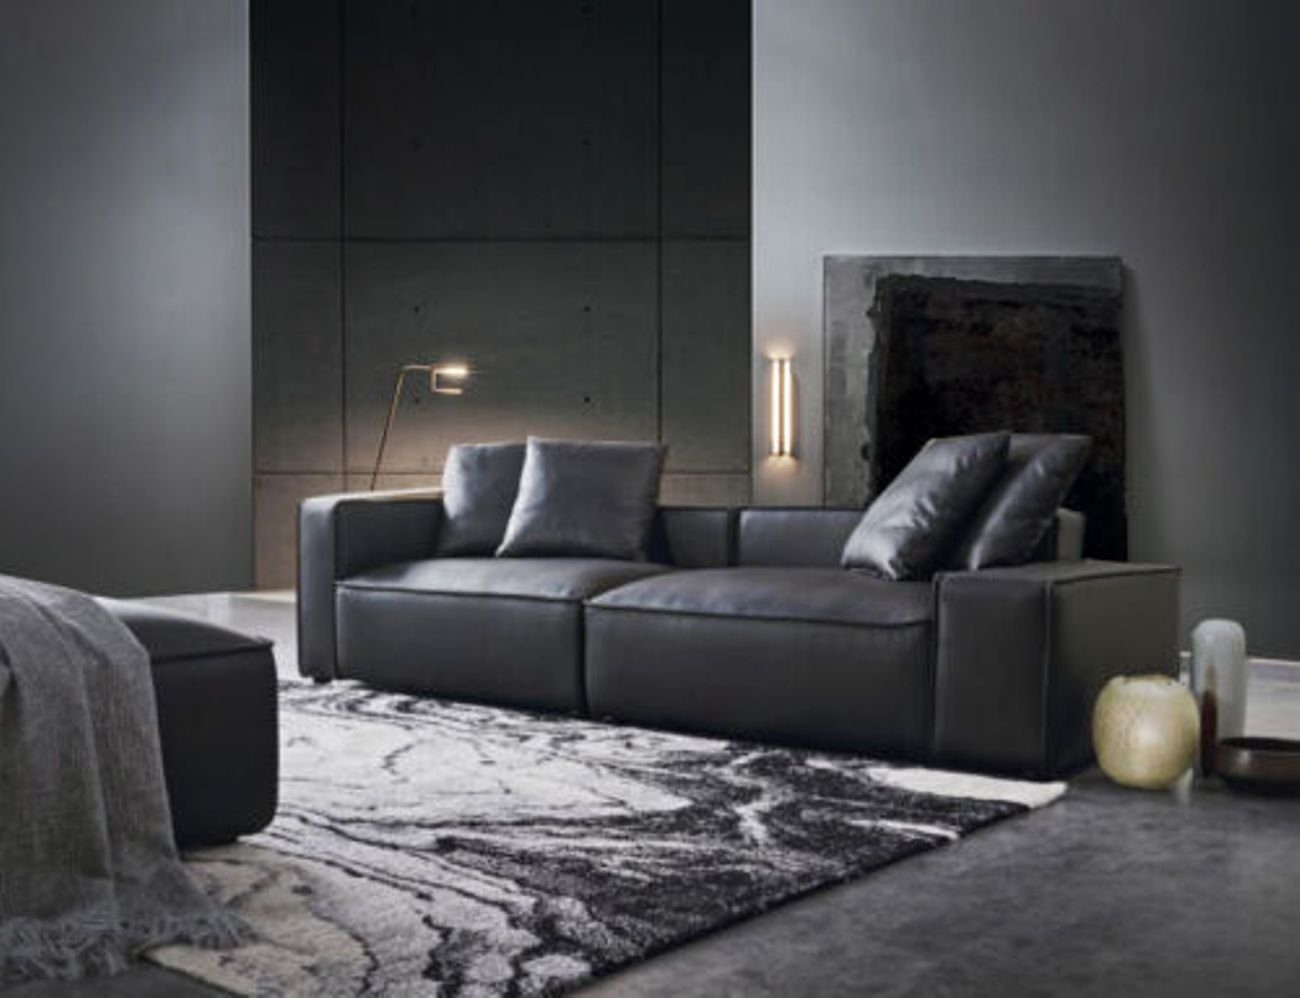 JVmoebel 3-Sitzer Schwarzer Dreisitzer Couch Polster Design Sofa 3er Sitz Zimmer Möbel, Made in Europe